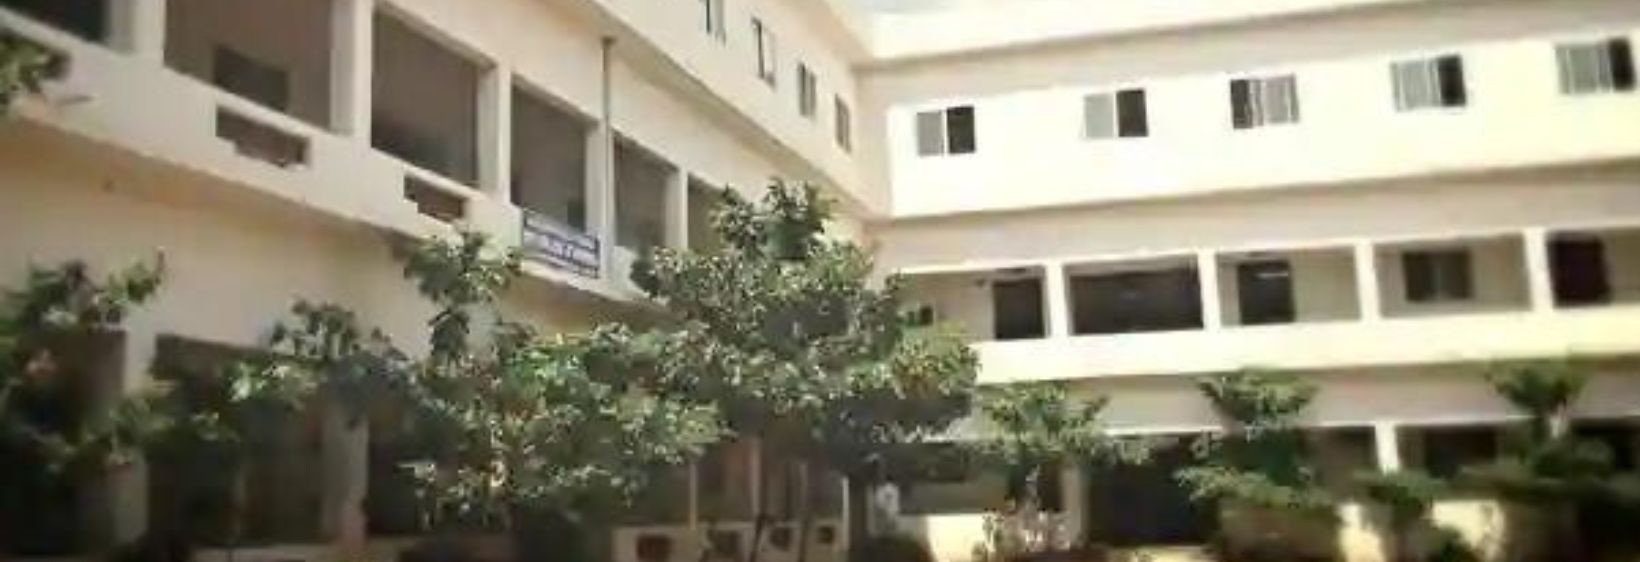 RVS College of Nursing - Sulur, Coimbatore